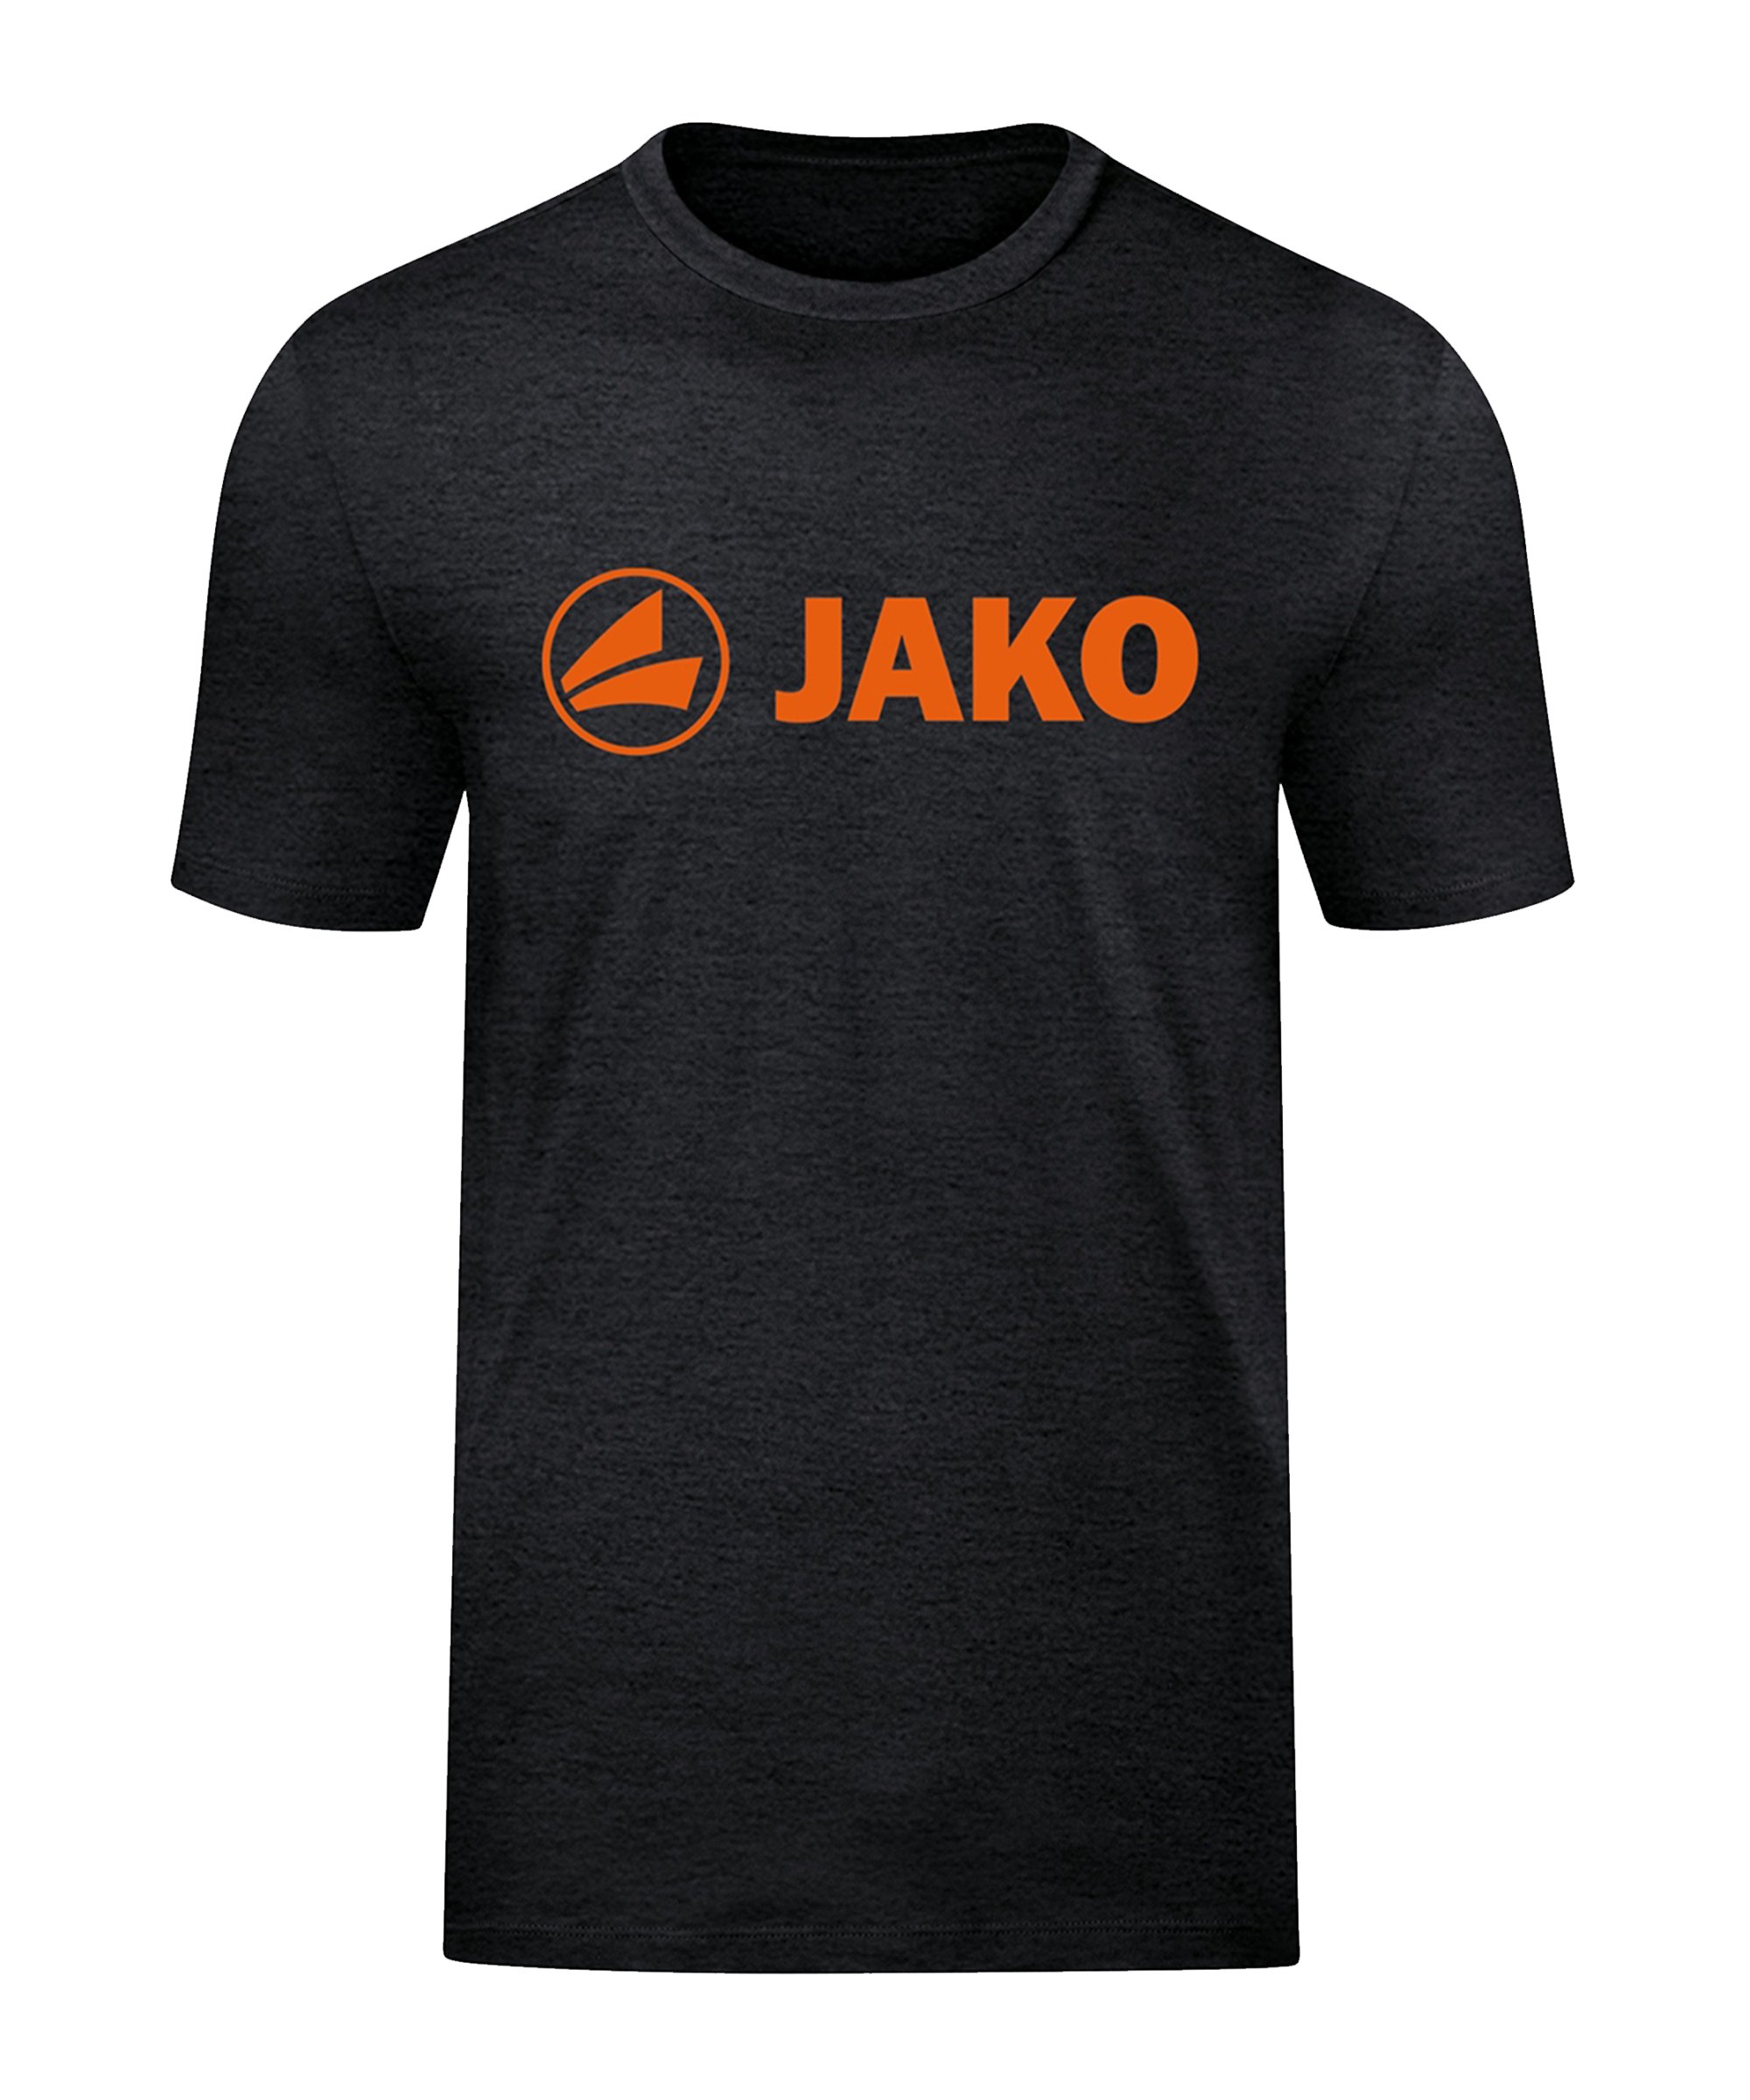 JAKO Promo T-Shirt Kids Schwarz Orange F506 - schwarz